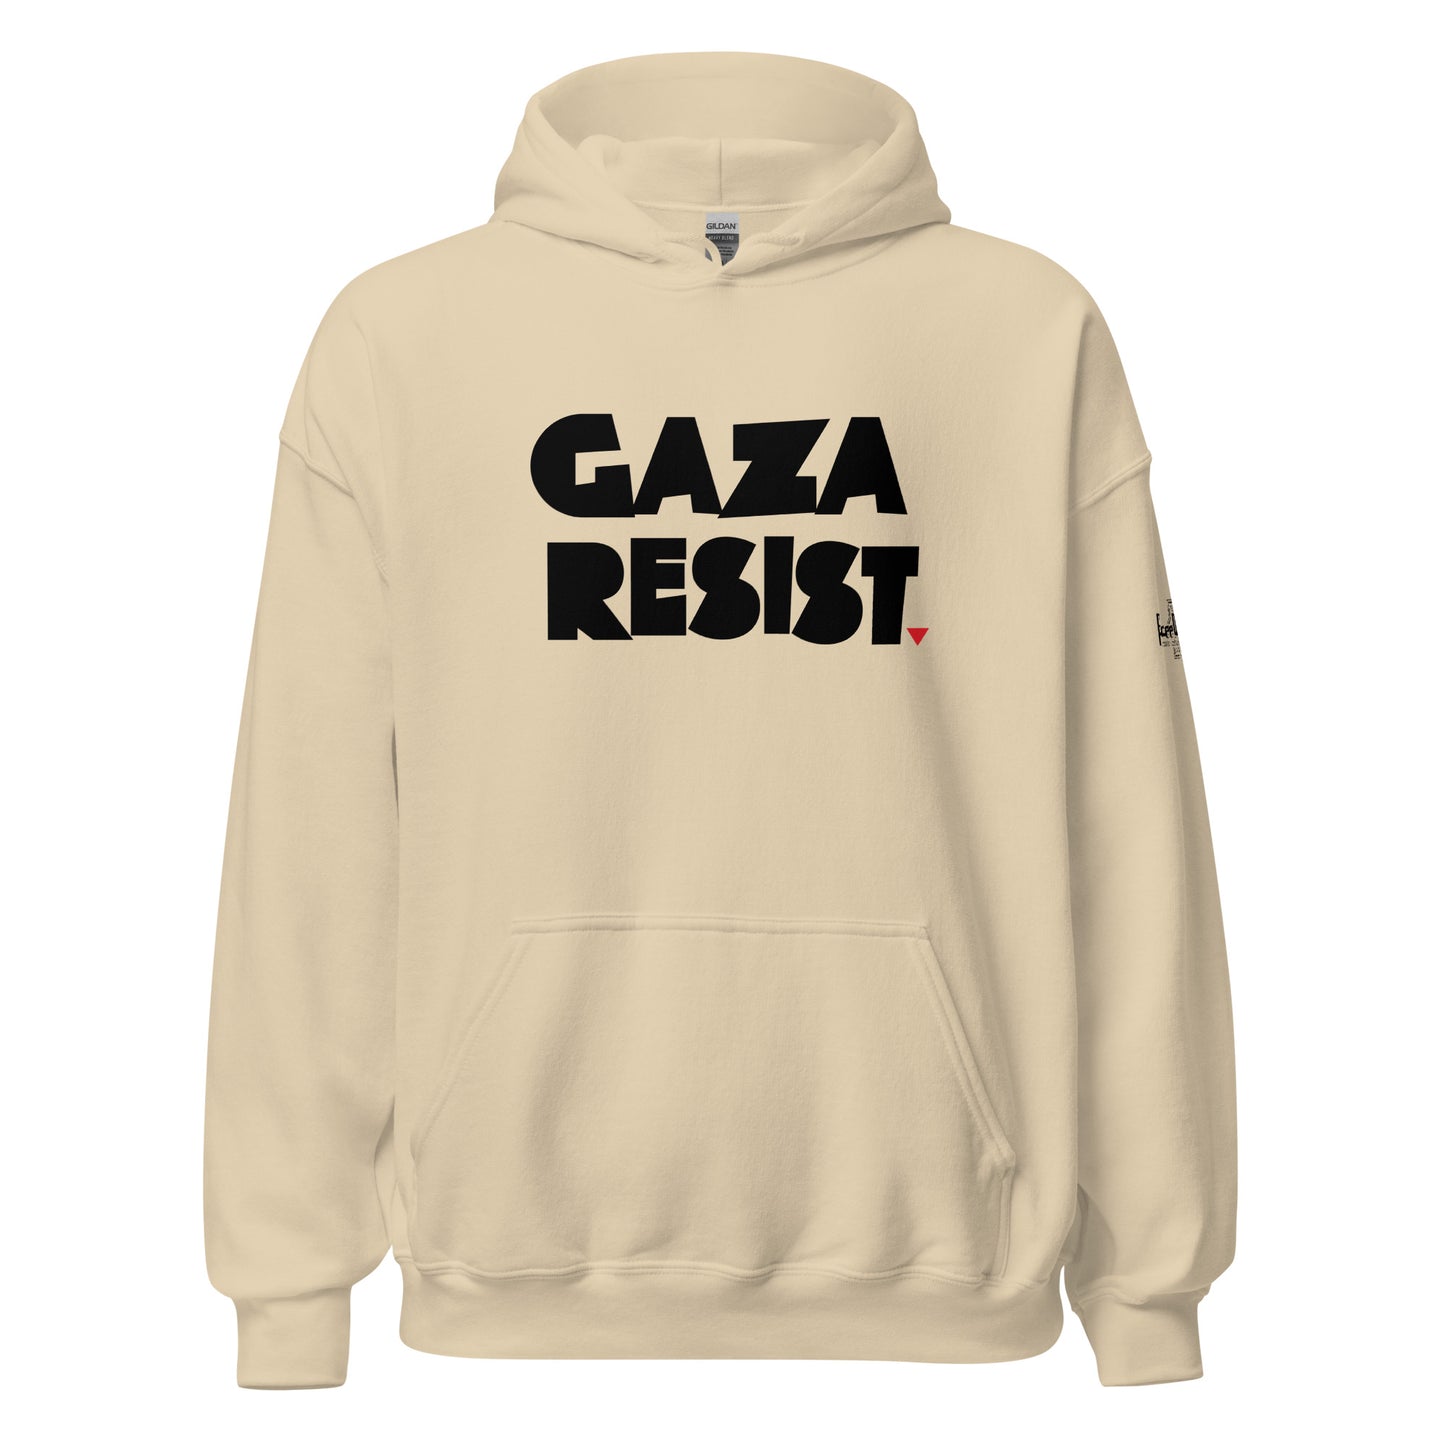 Gaza Resist Hoodie